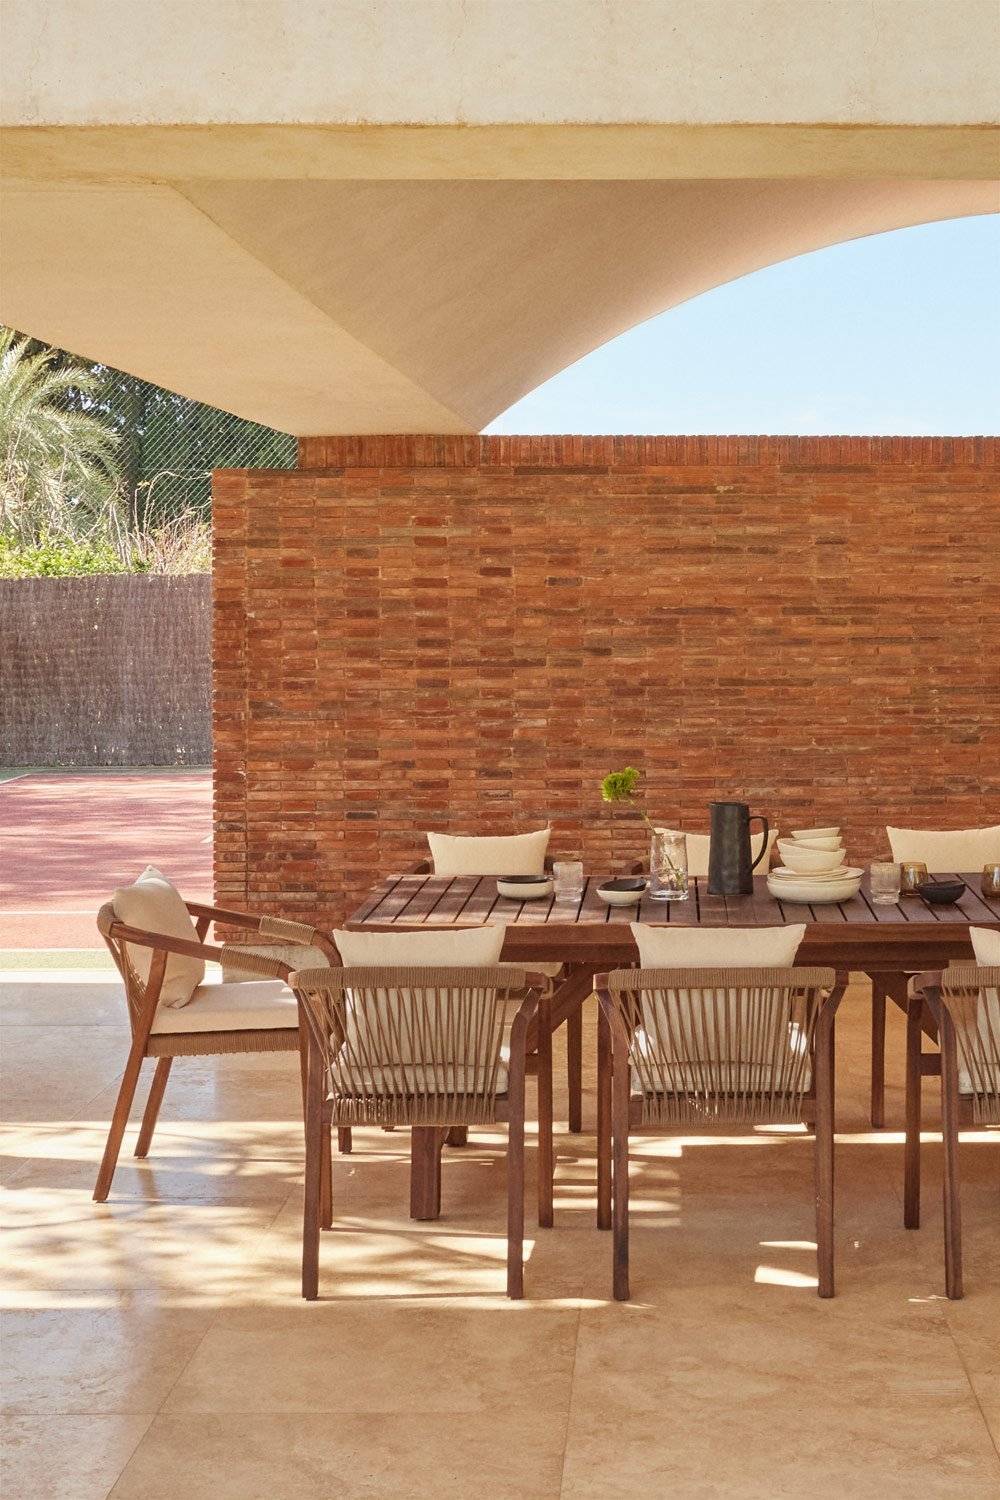 Rechthoekige uitschuifbare tafelset (200-300x100 cm) en 8 tuinstoelen met armleuningen in Dubai acaciahout , galerij beeld 1